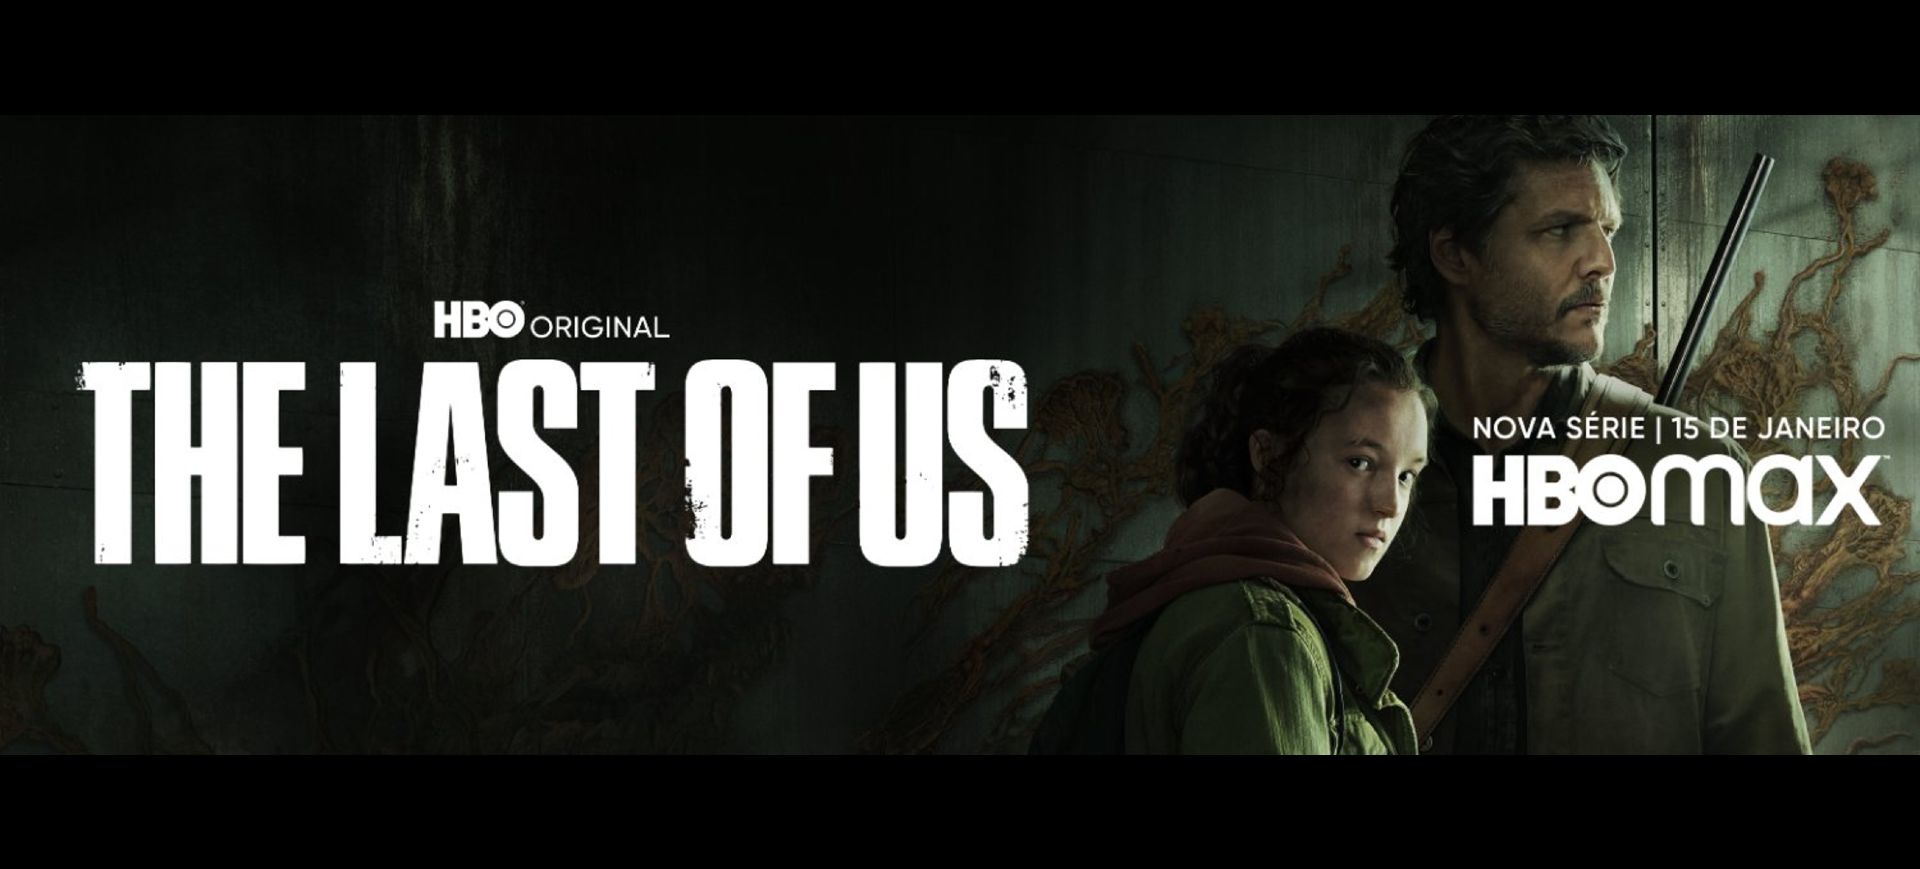 À esquerda da imagem está o texto The Last of Us, à direita aparecem os dois personagens principais: Ellie, interpretada pela atriz Bella Ramsey, e Joel, interpretado pelo ator Pedro Pascal